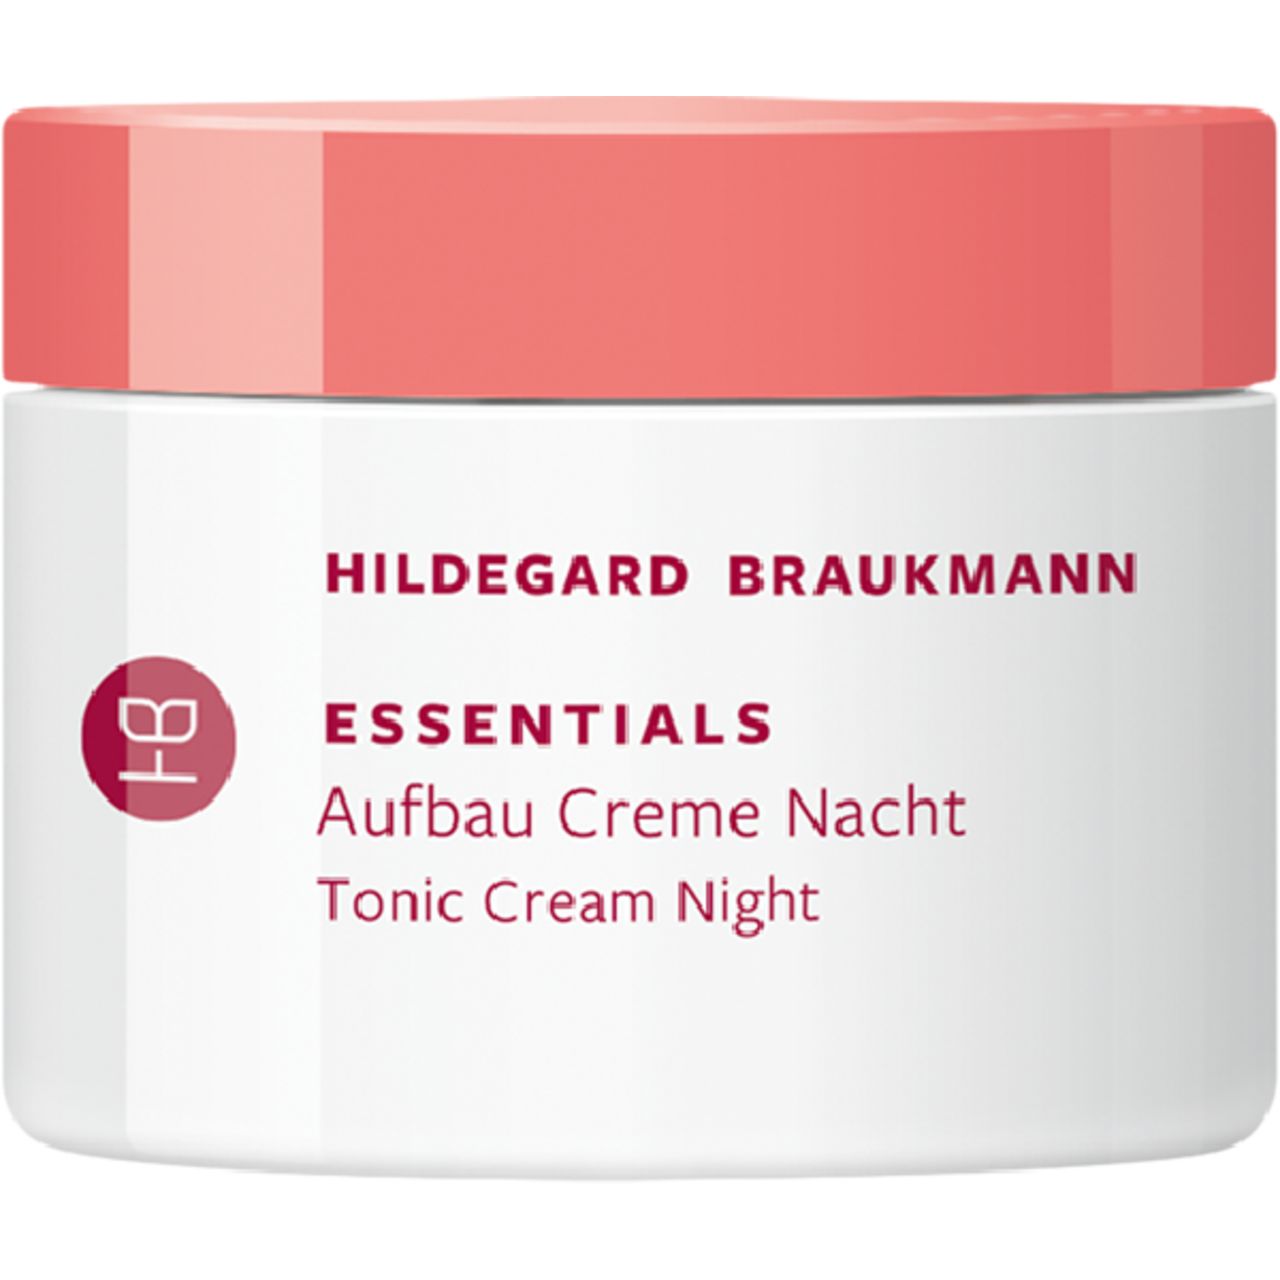 Hildegard Braukmann, Essentials Aufbau Creme Nacht